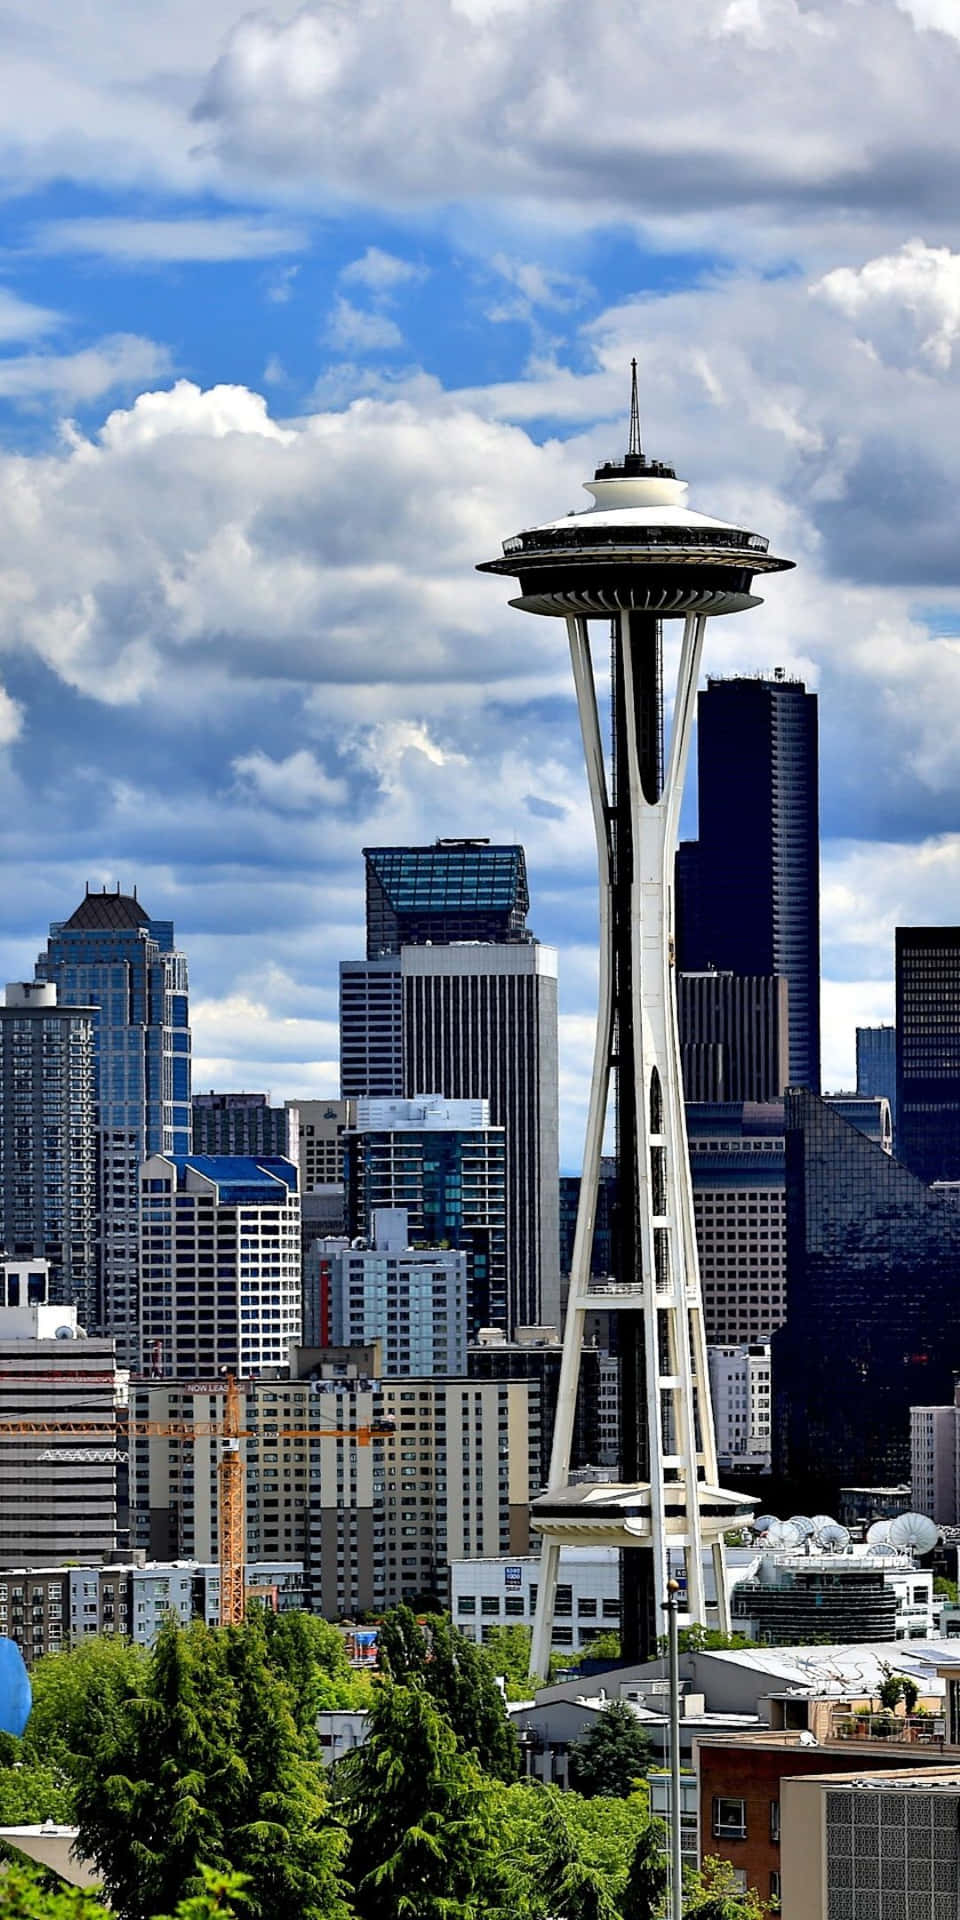 “Udsigt over Seattle skyline med den nye Pixel 3”